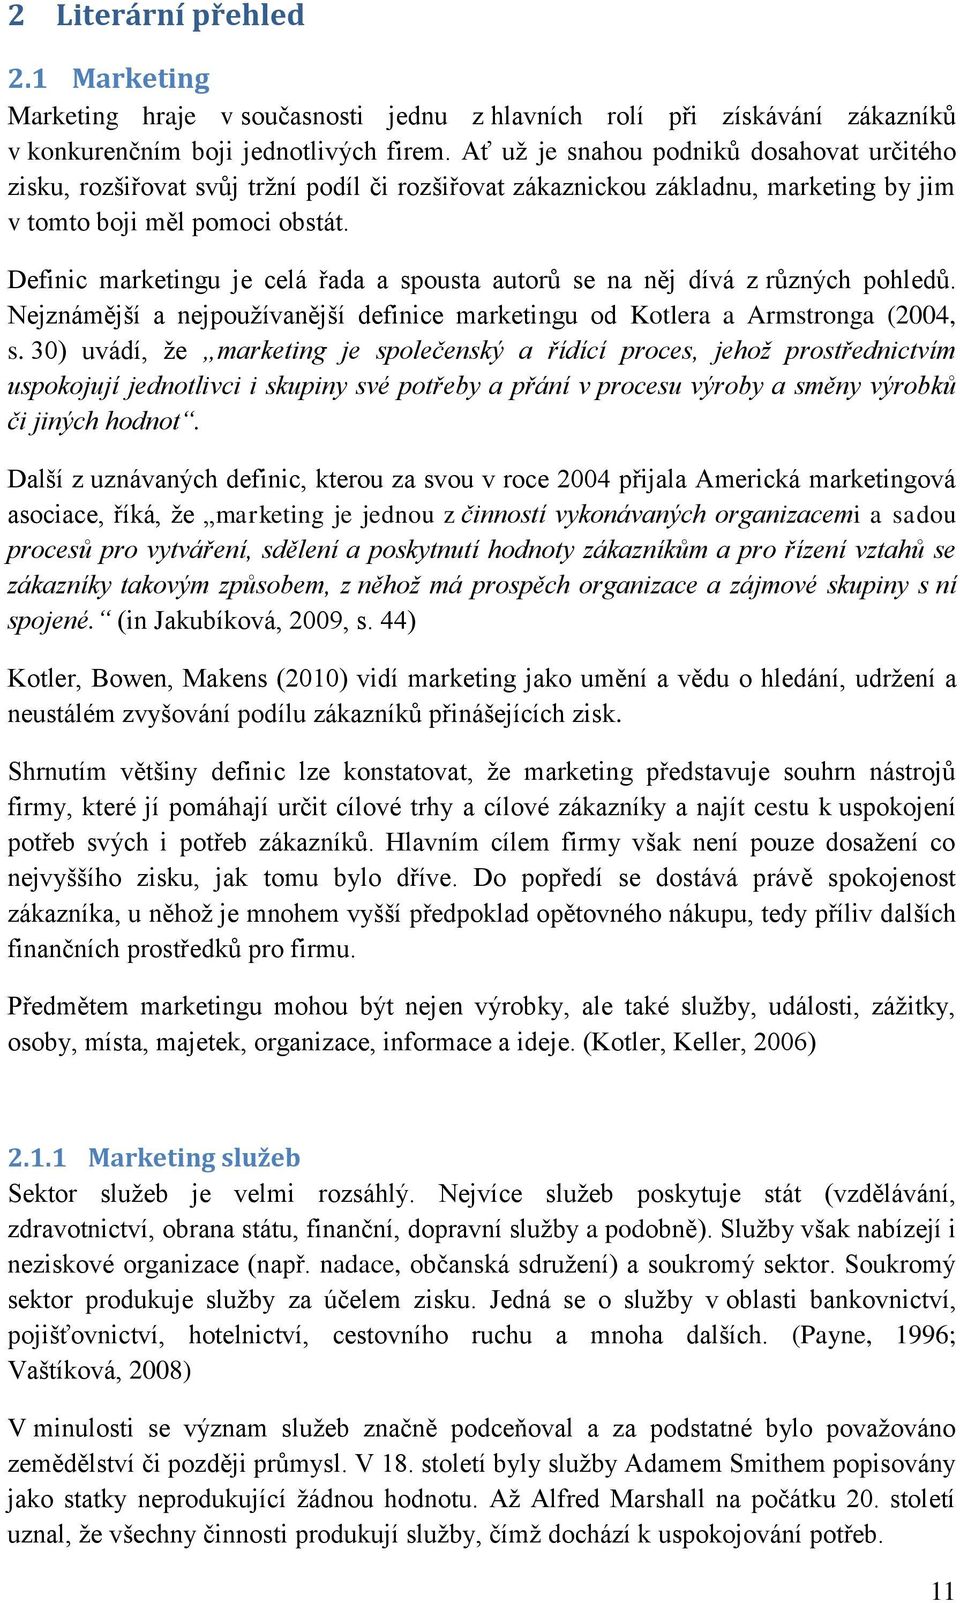 Definic marketingu je celá řada a spousta autorů se na něj dívá z různých pohledů. Nejznámější a nejpoužívanější definice marketingu od Kotlera a Armstronga (2004, s.